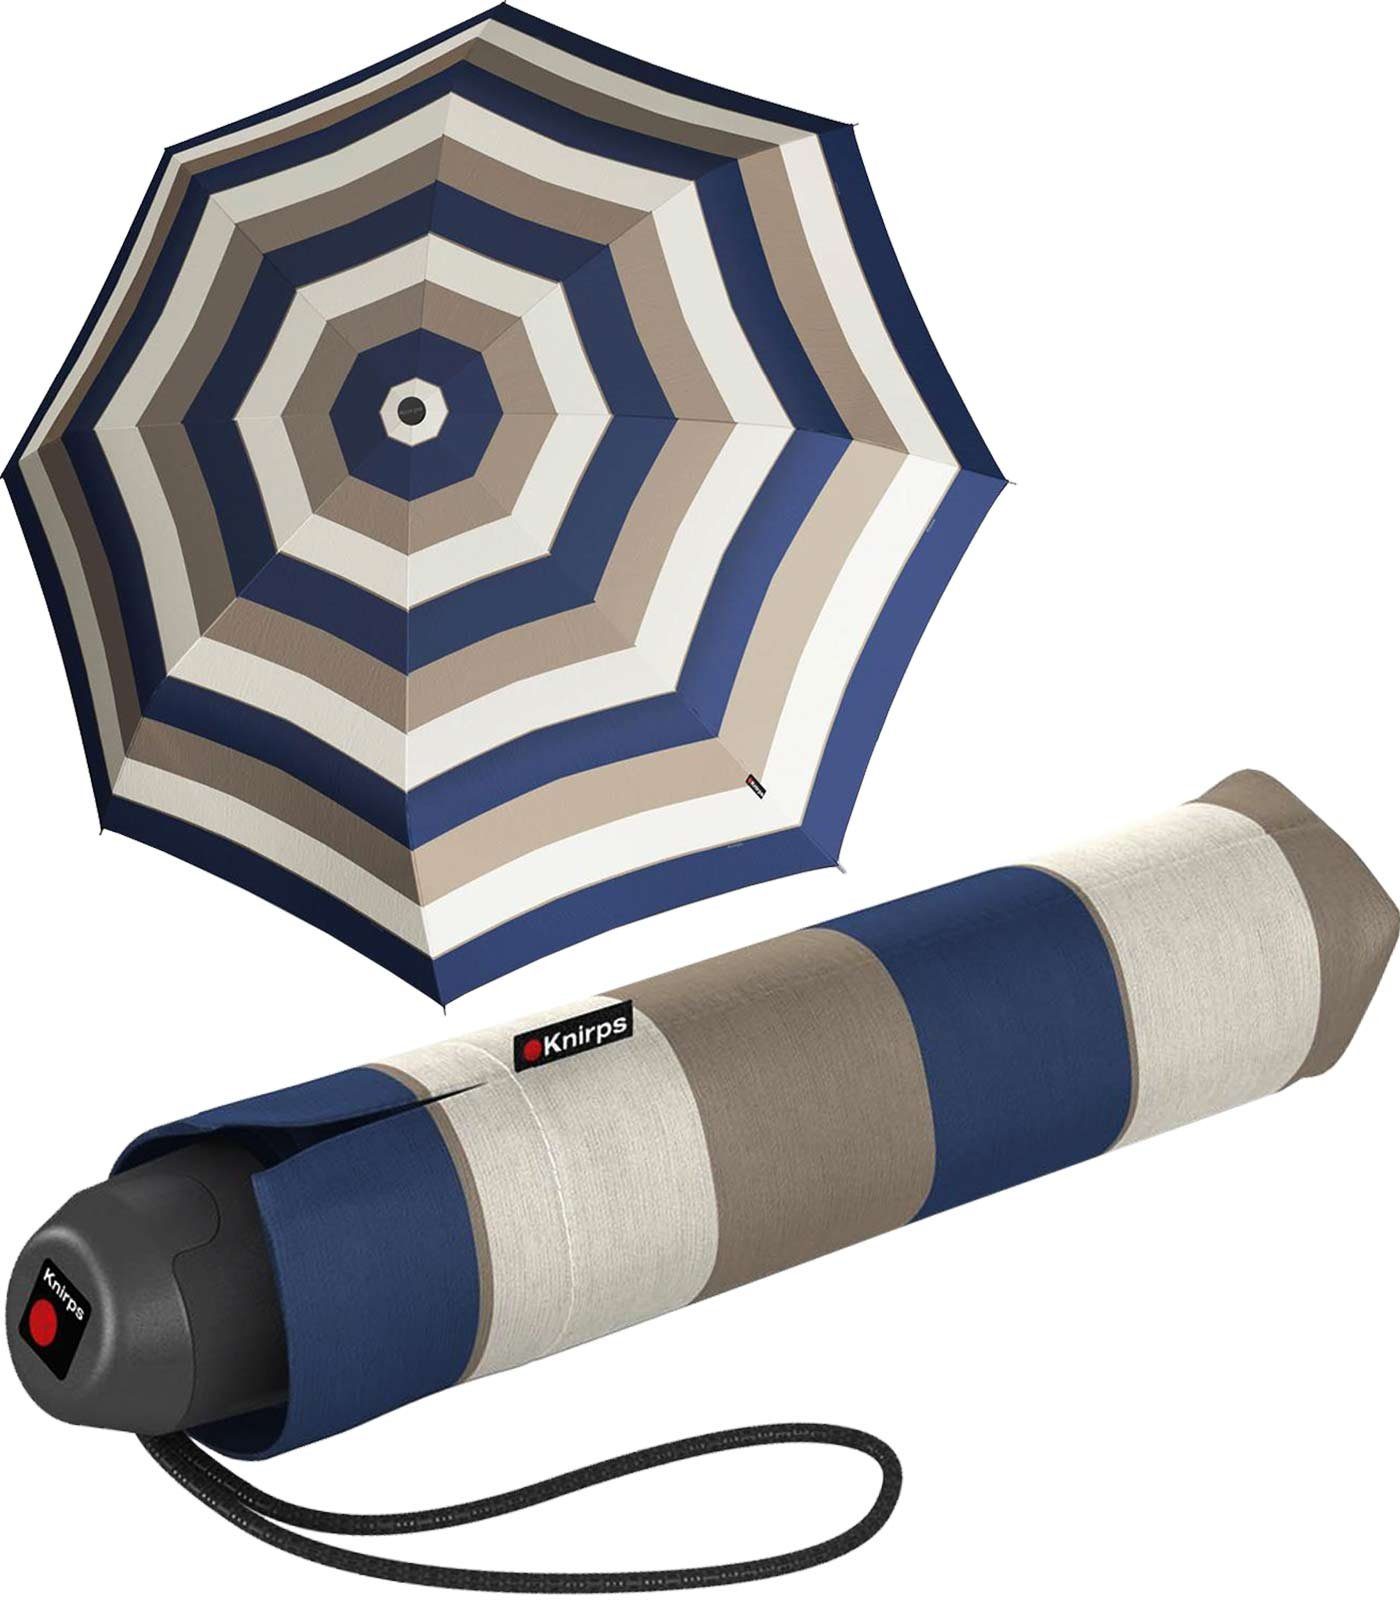 Stripe leichter der Damen-Schirm, den Alltag für E.051 Handöffner Taschenregenschirm blau-braun-creme Knirps® red, kleine Taschenschirm